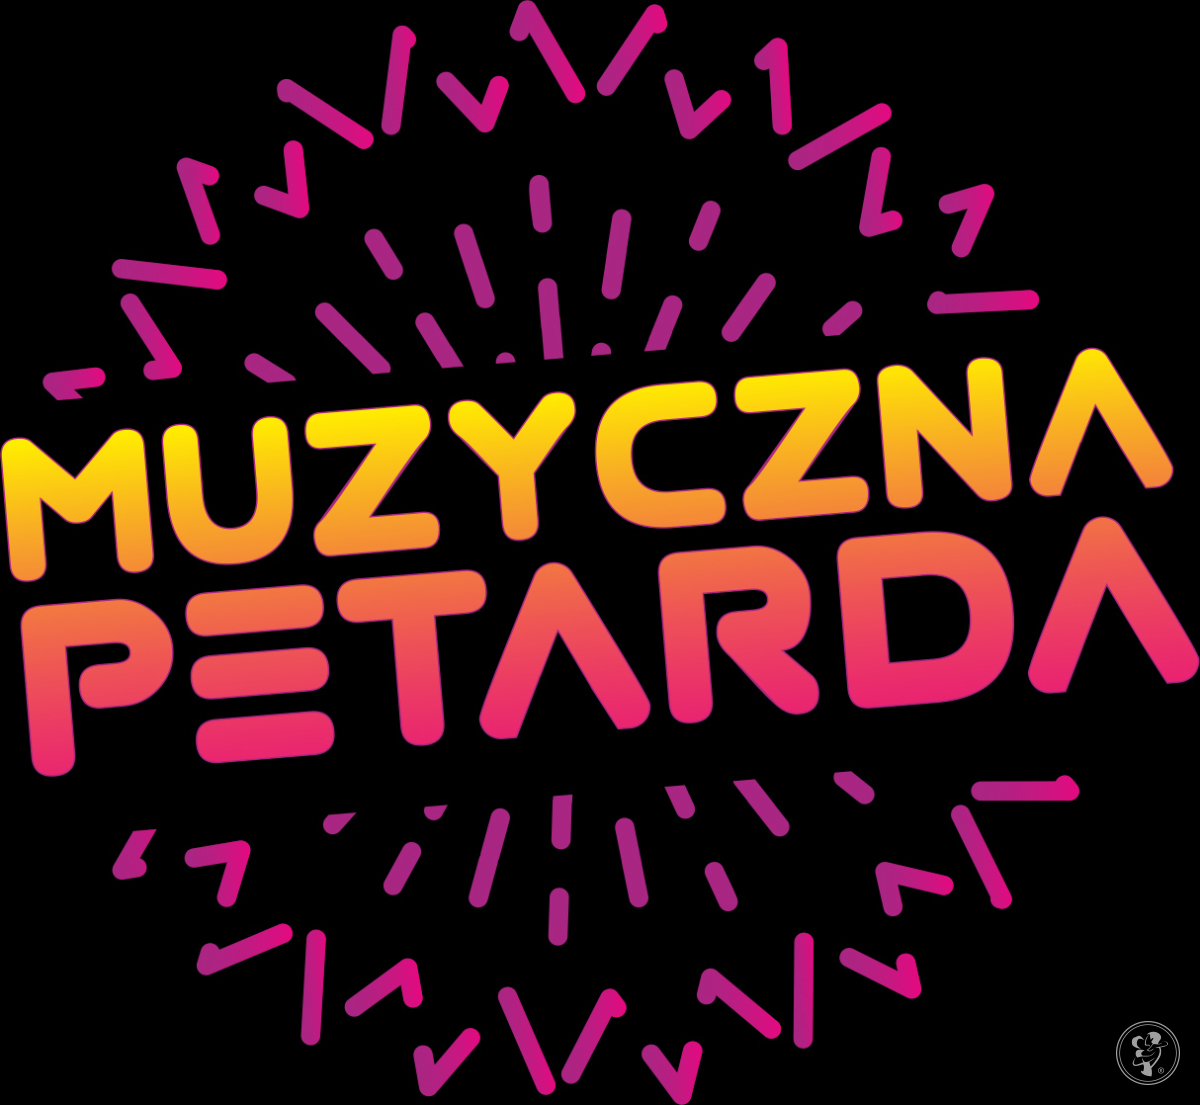 Muzyczna Petarda | DJ na wesele Katowice, śląskie - zdjęcie 1